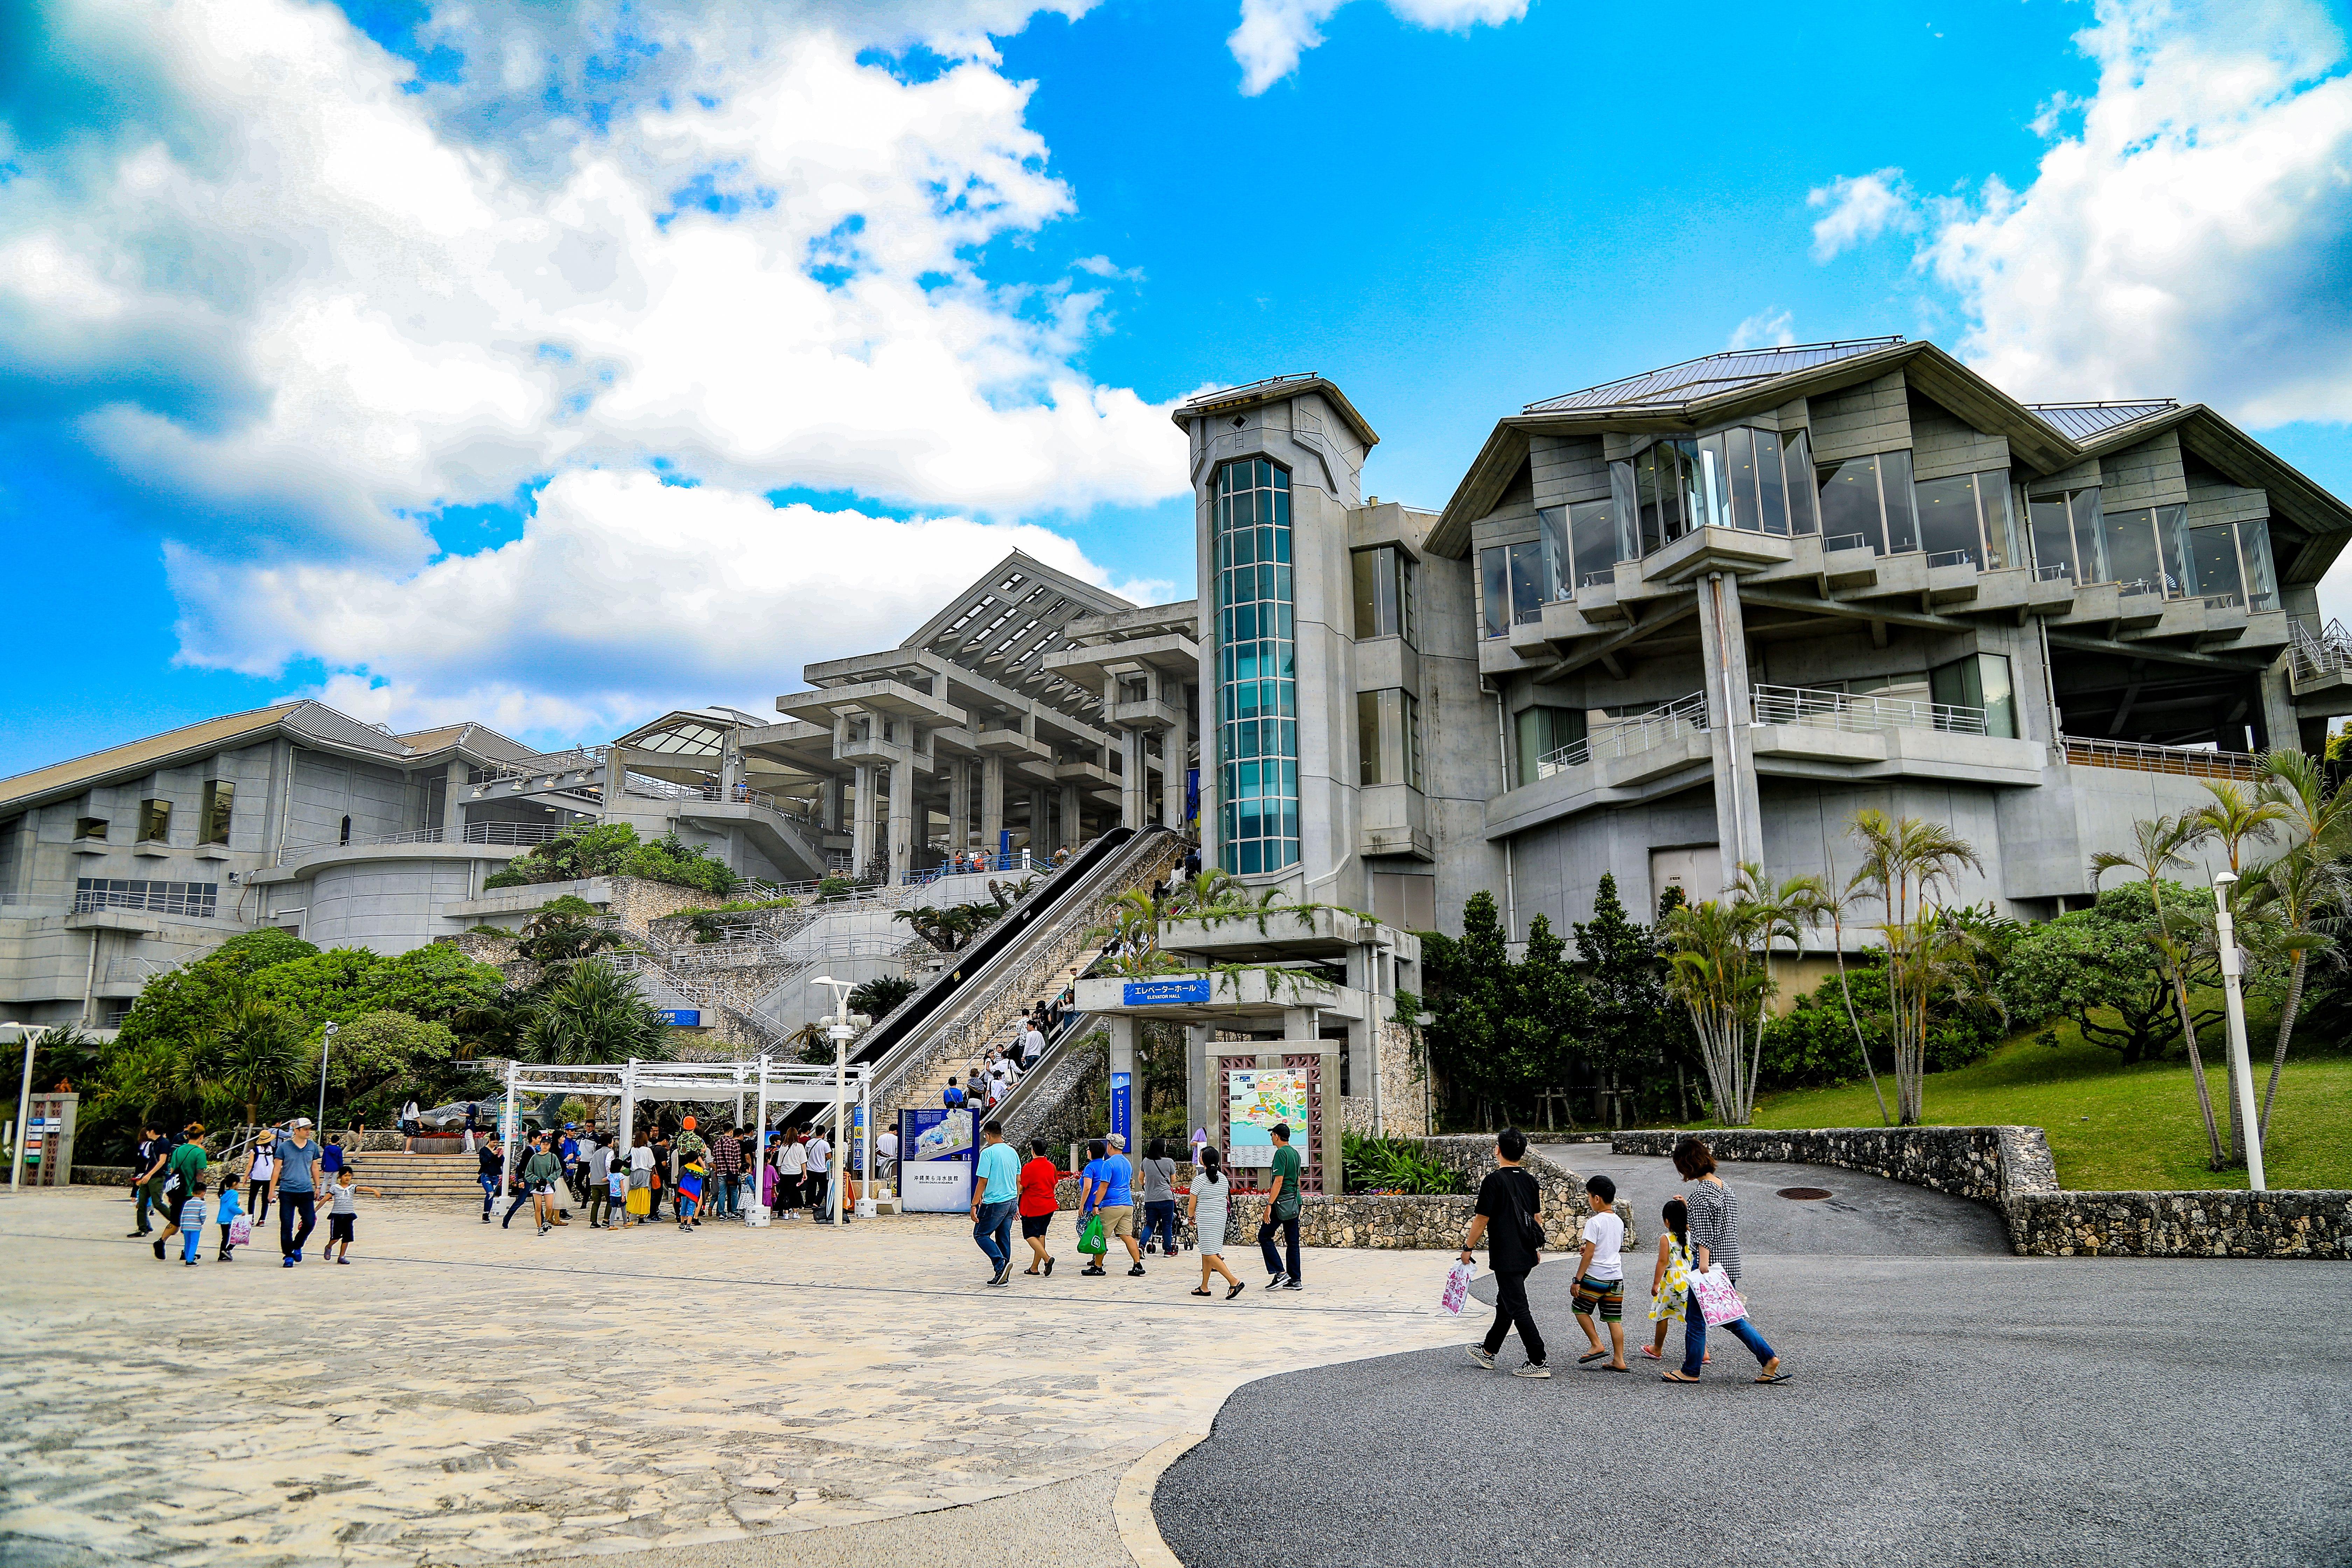 Okinawa Churaumi Aquarium Tickets